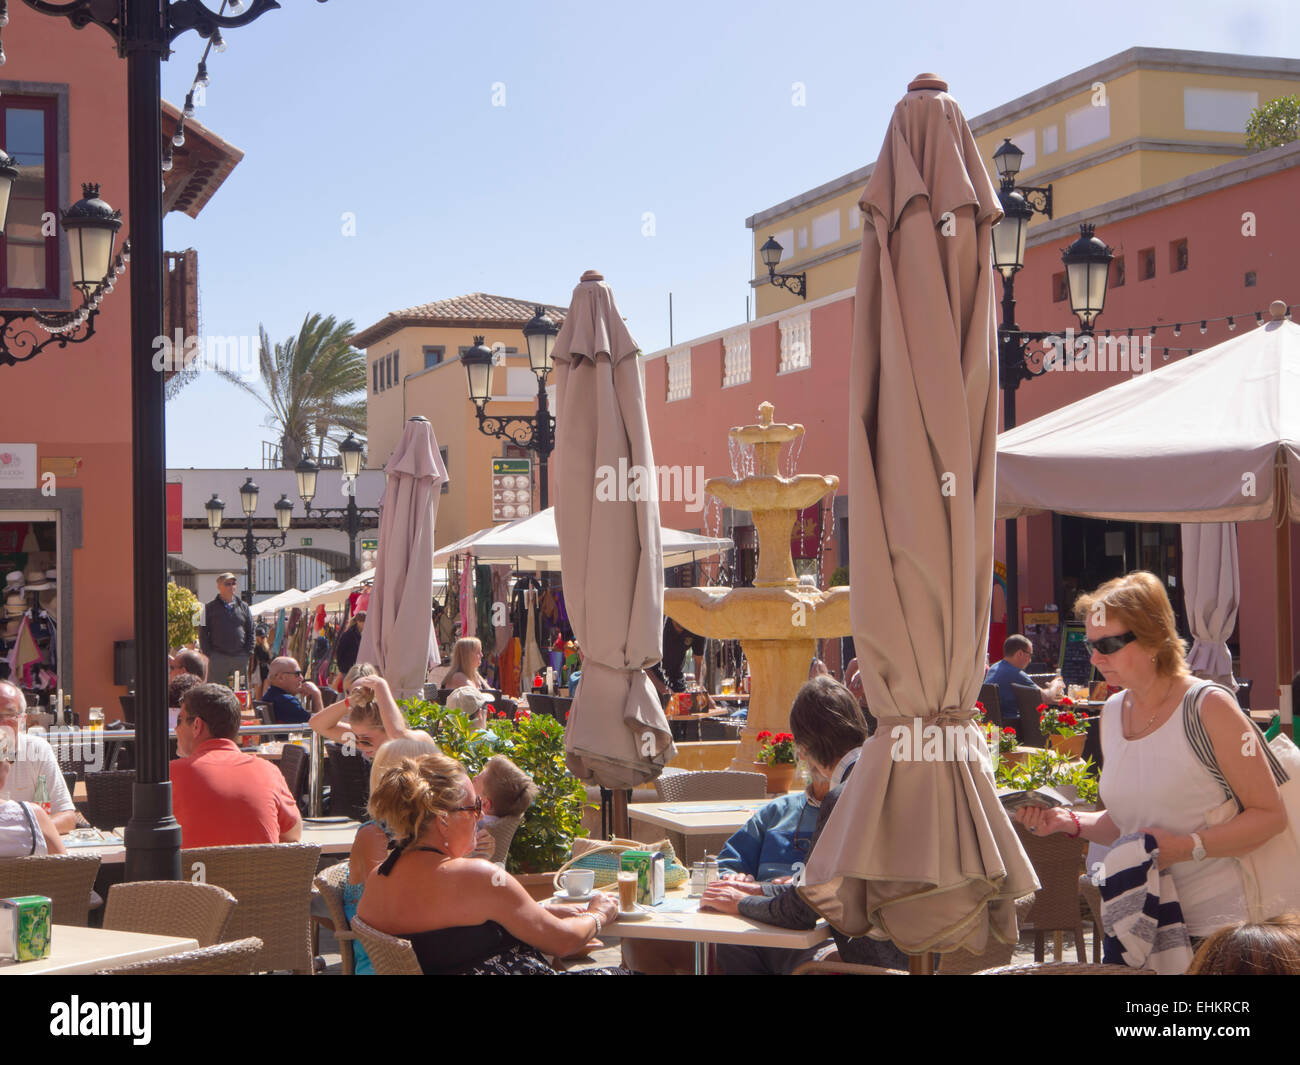 Samstagsmarkt in Corralejo auf Fuerteventura Kanaren Spanien, modernes Einkaufszentrum, Flohmarkt und Restaurants kombiniert Stockfoto